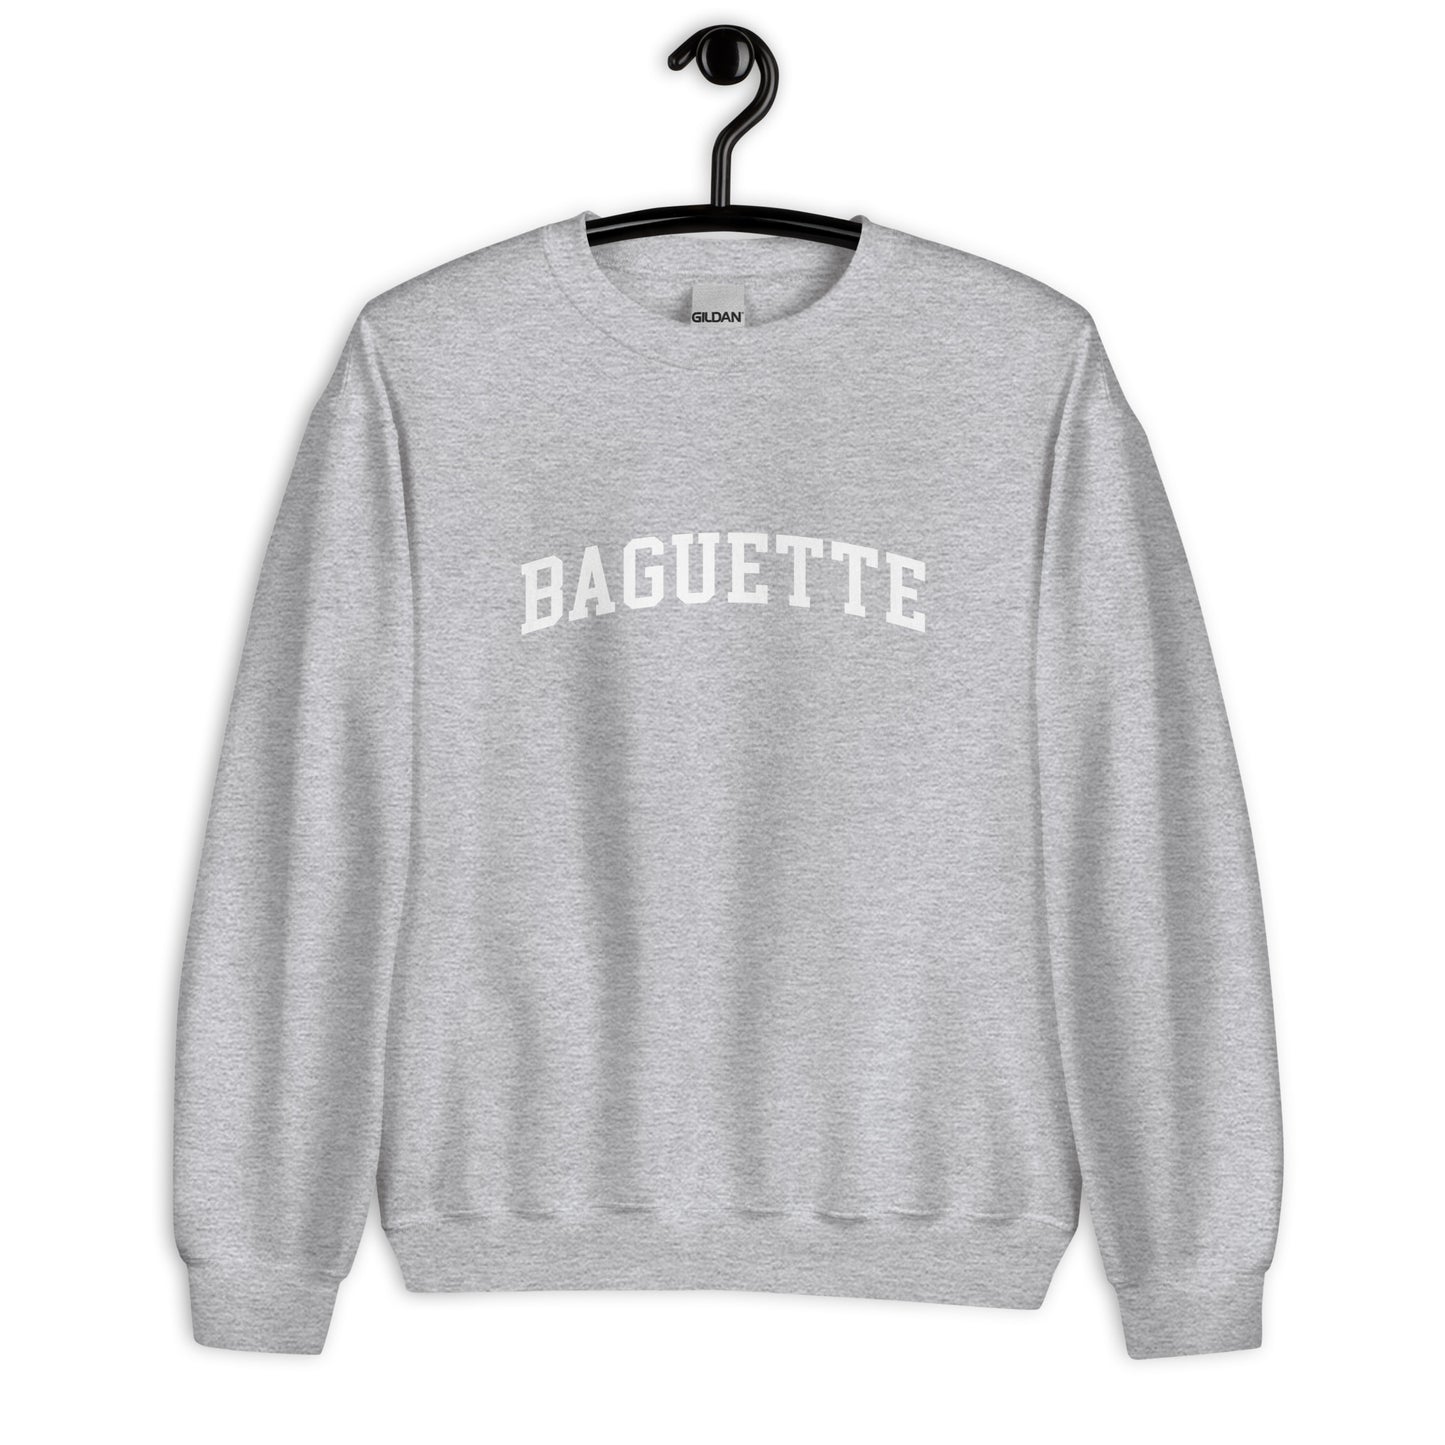 Baguette Sweatshirt - Arched Font